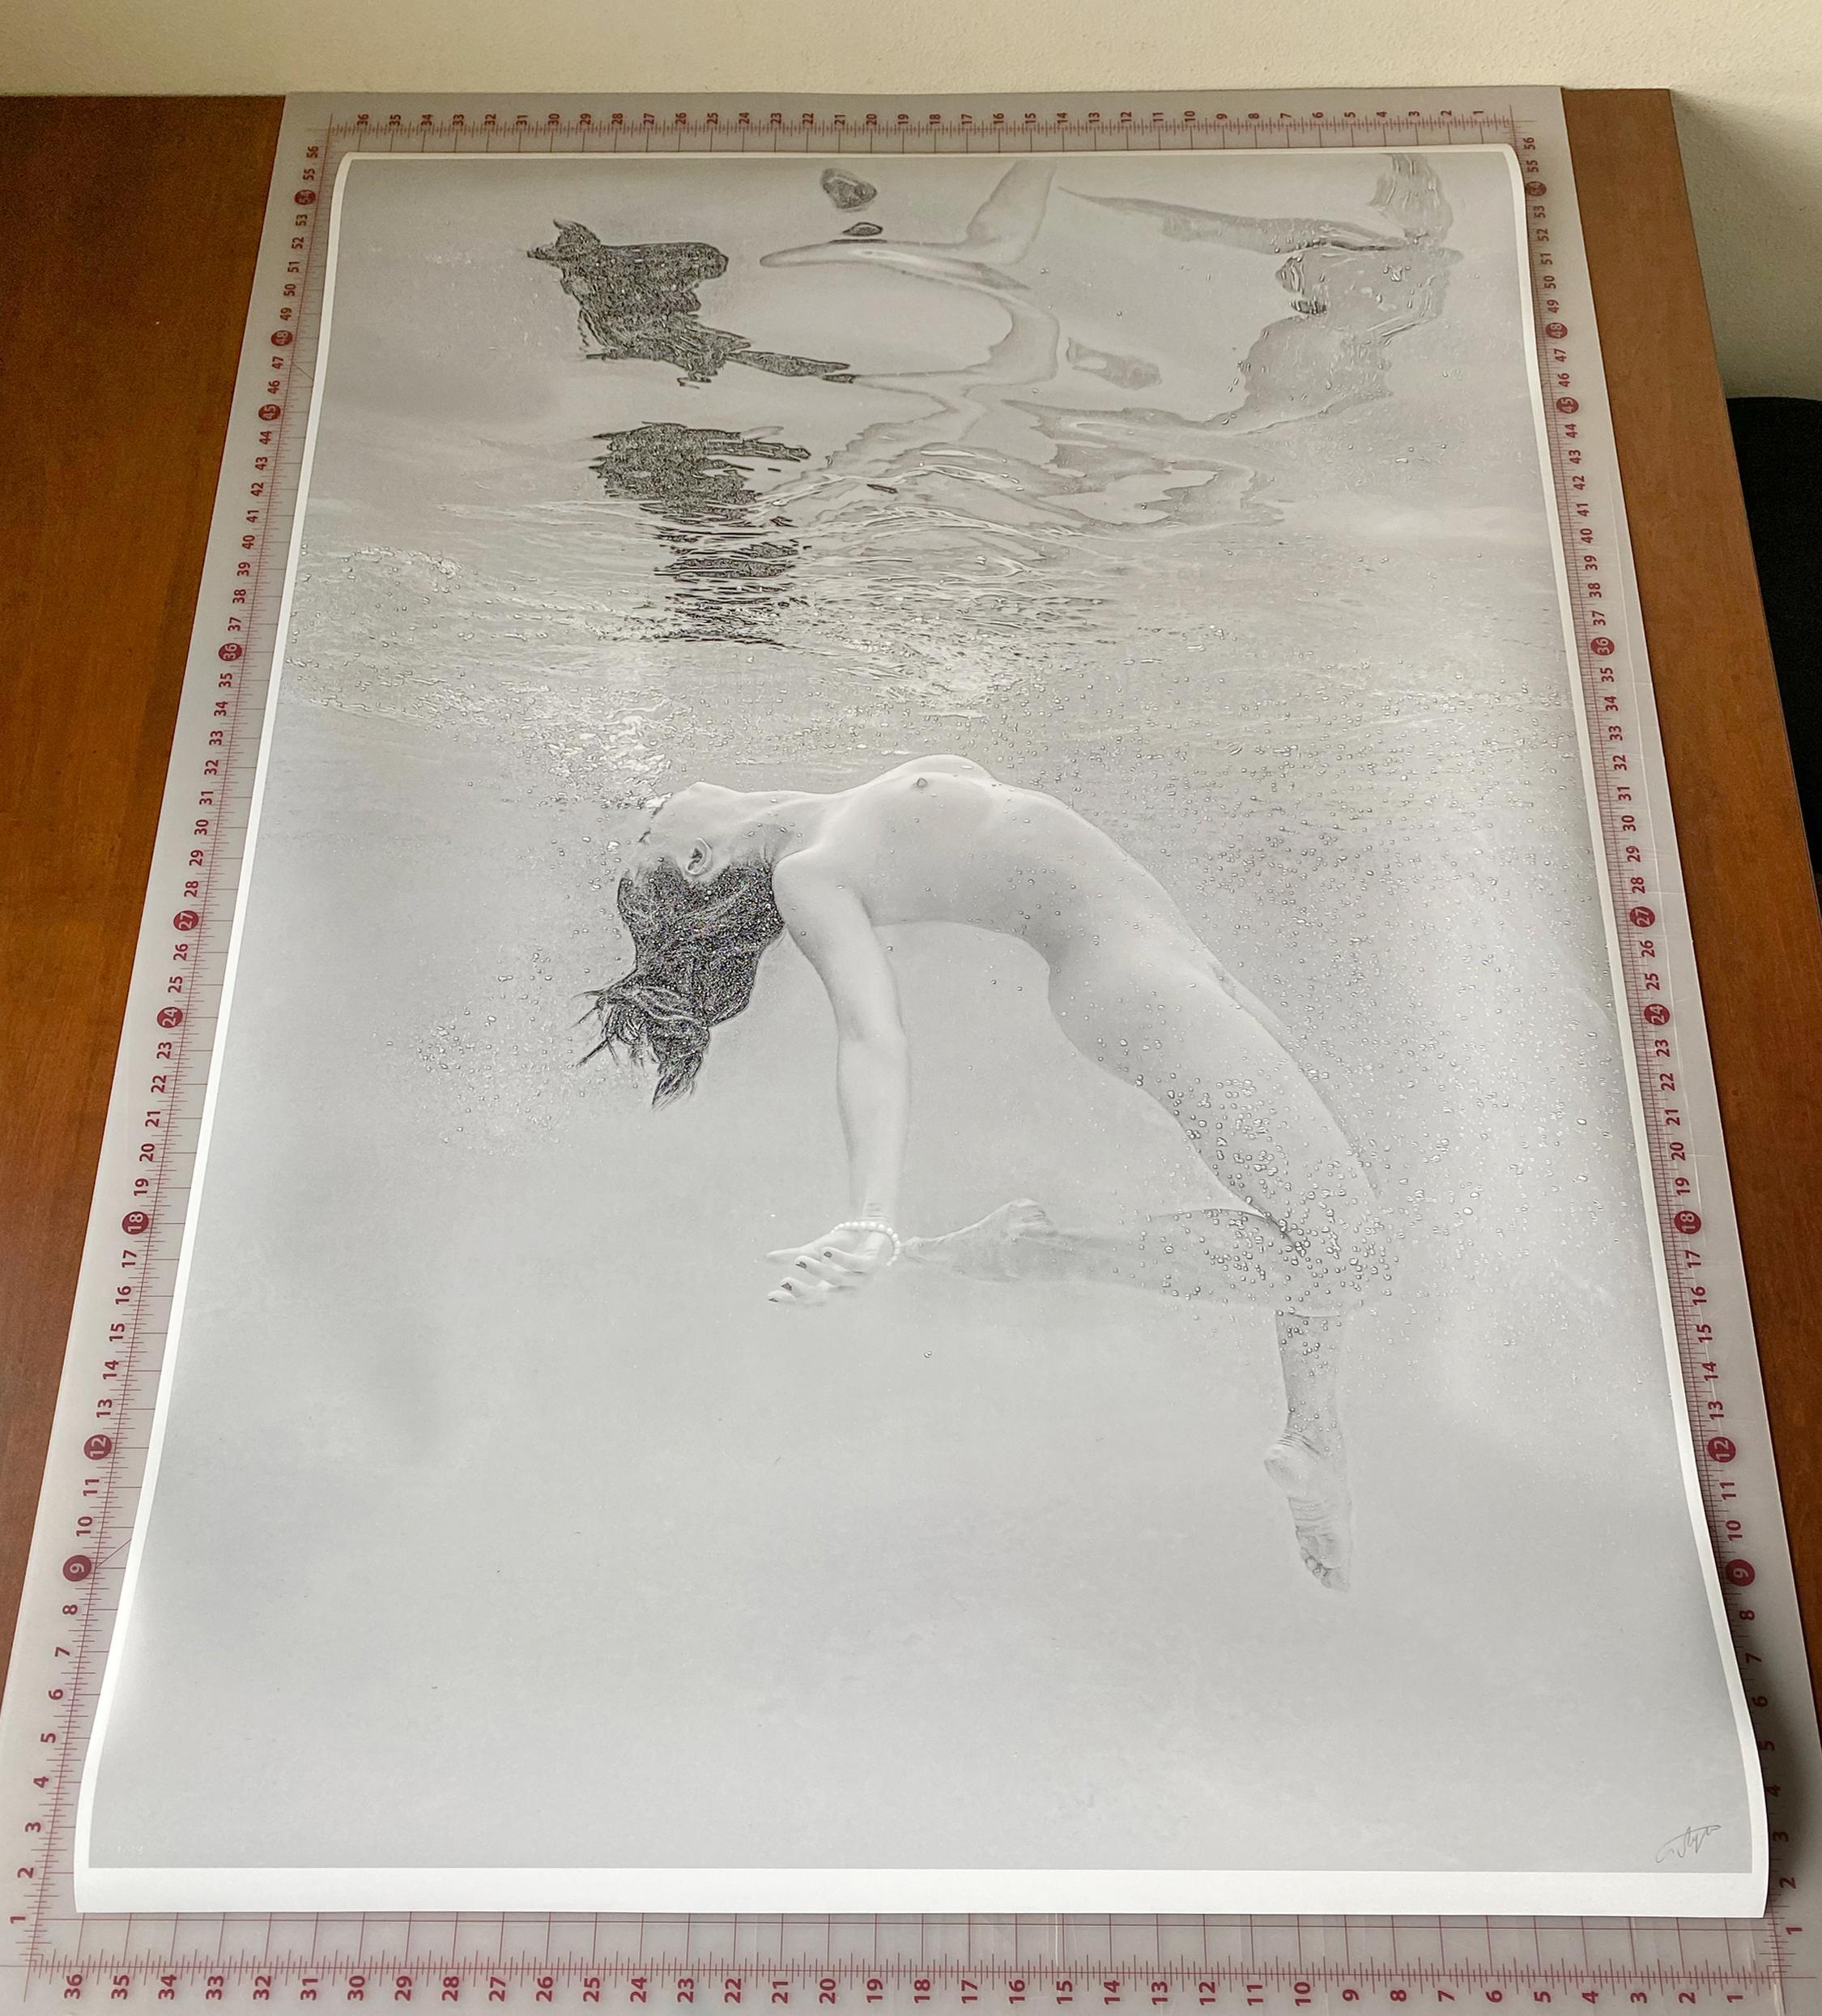 Eine Schwarz-Weiß-Fotografie einer nackten jungen Frau, die in einem Pool taucht. Die Frau kommt aus der Tiefe an die Oberfläche und ihr Körper spiegelt sich in der inneren Wasseroberfläche.

Original-Pigmentdruck in Galeriequalität, vom Künstler